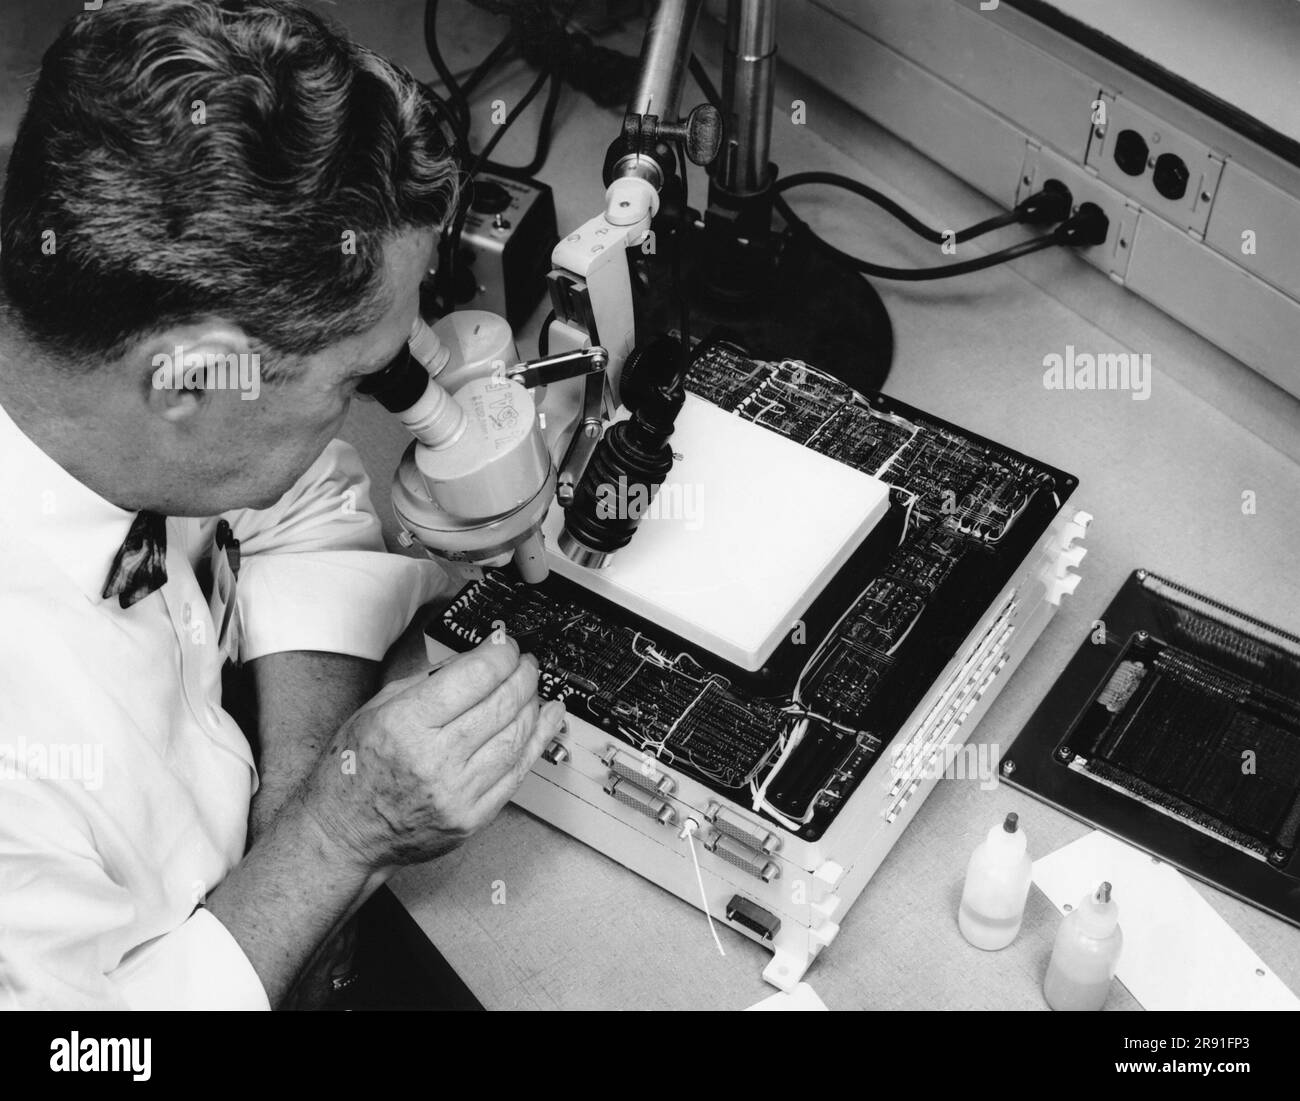 St.Petersburg, Florida: Novembre 1962 Un tecnico ispeziona un nuovo computer di guida aeronautica subminiatura sviluppato da Honeywell che può eseguire 3.000 aggiunte in una frazione di secondo. Foto Stock